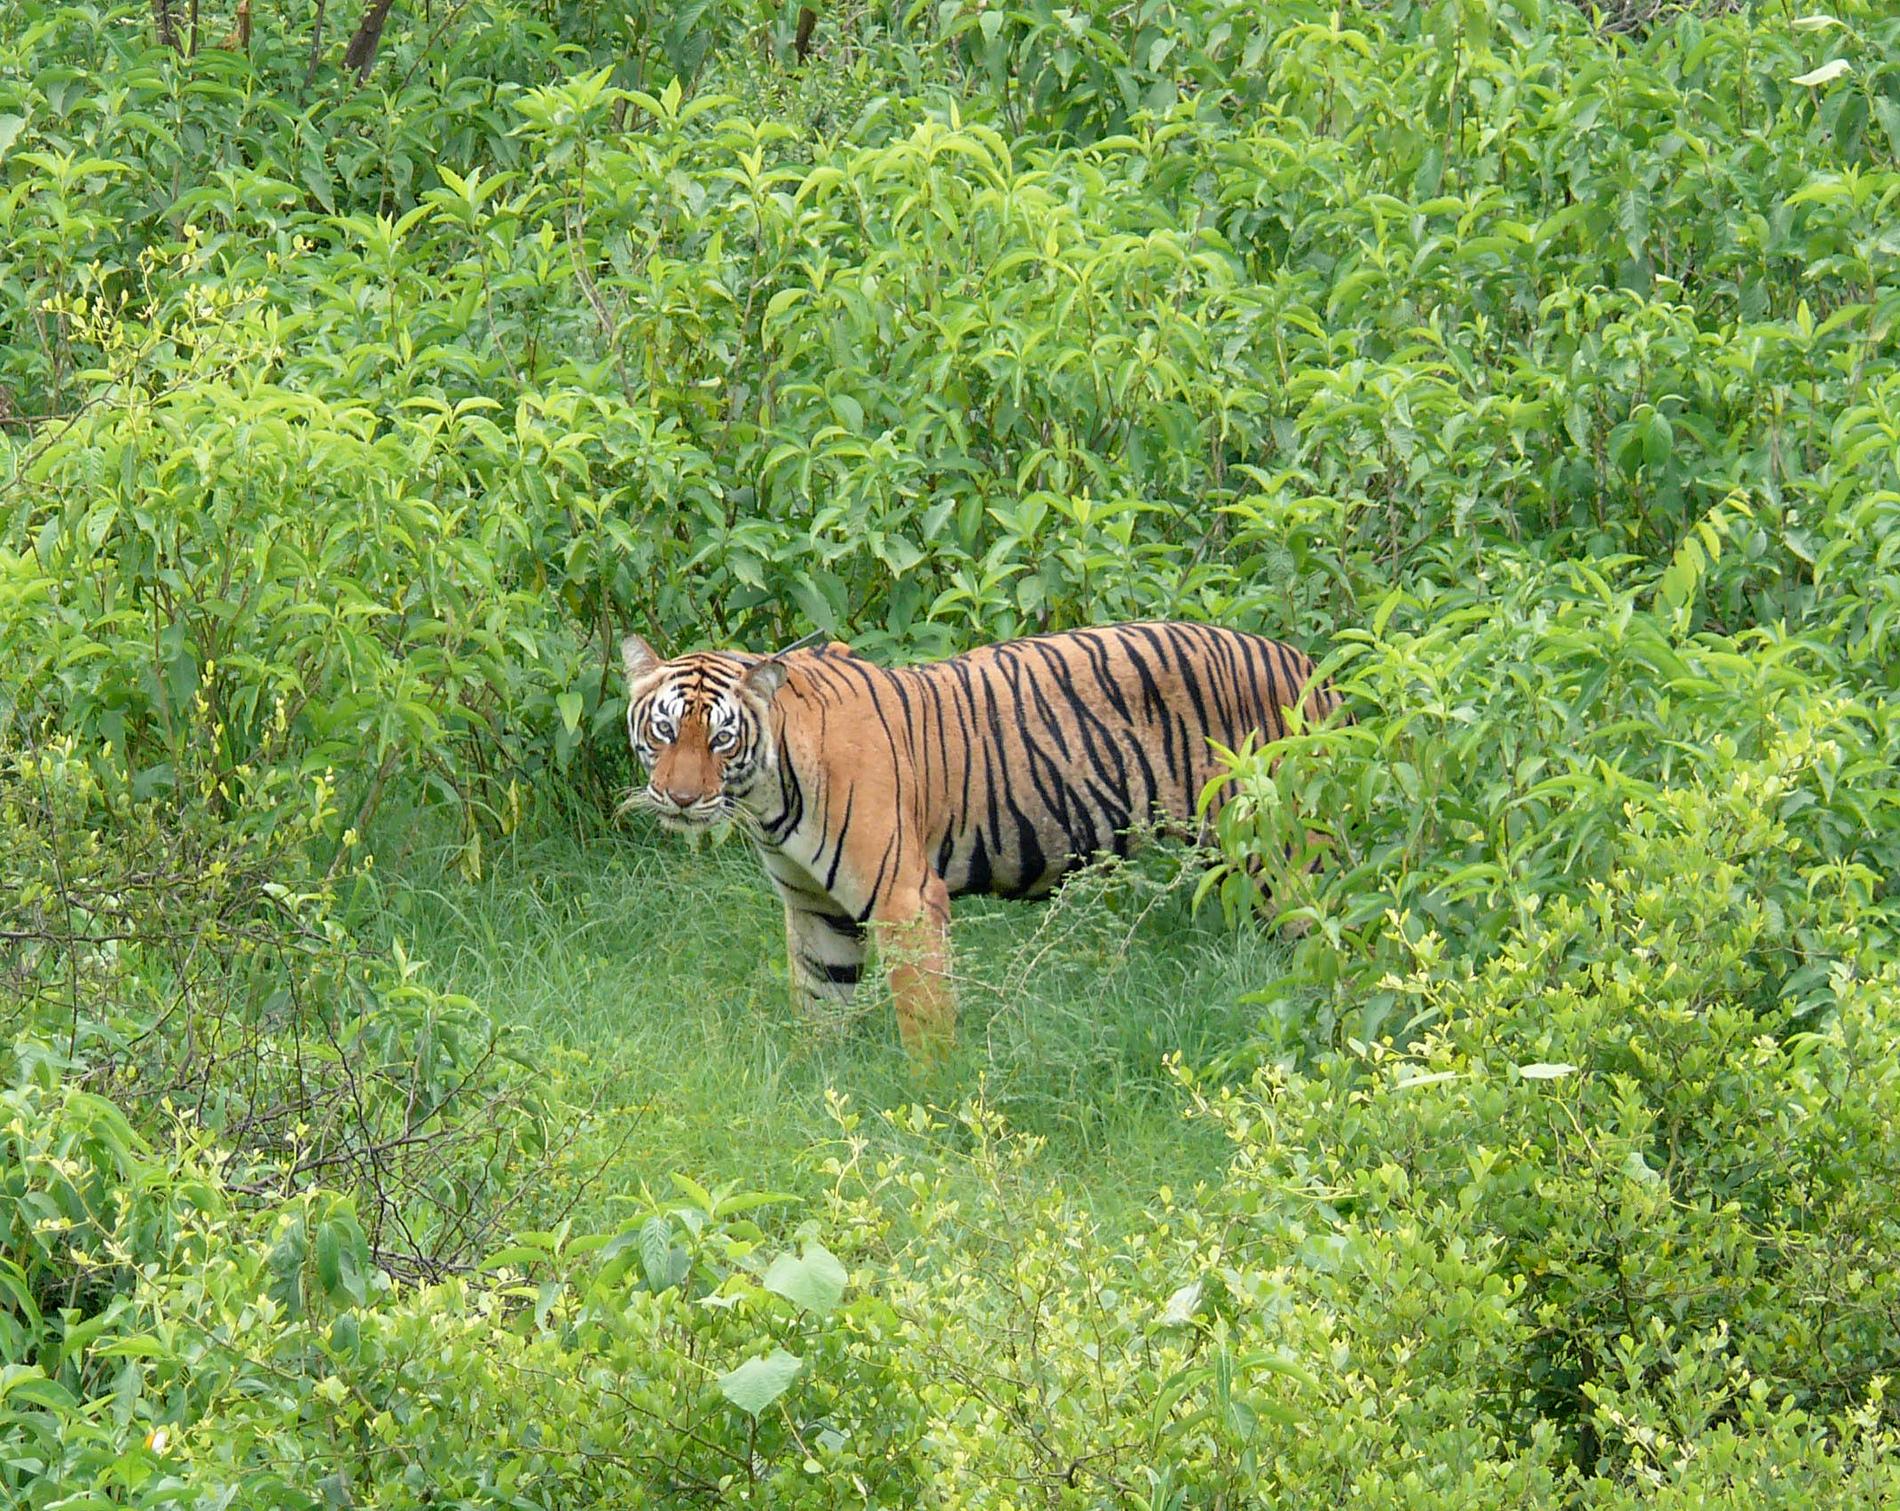 Tigerhona i nationalparken Sariska i delstaten Rajasthan i Indien. Indien har nu cirka 3 000 tigrar, två tredjedelar av hela världspopulationen.